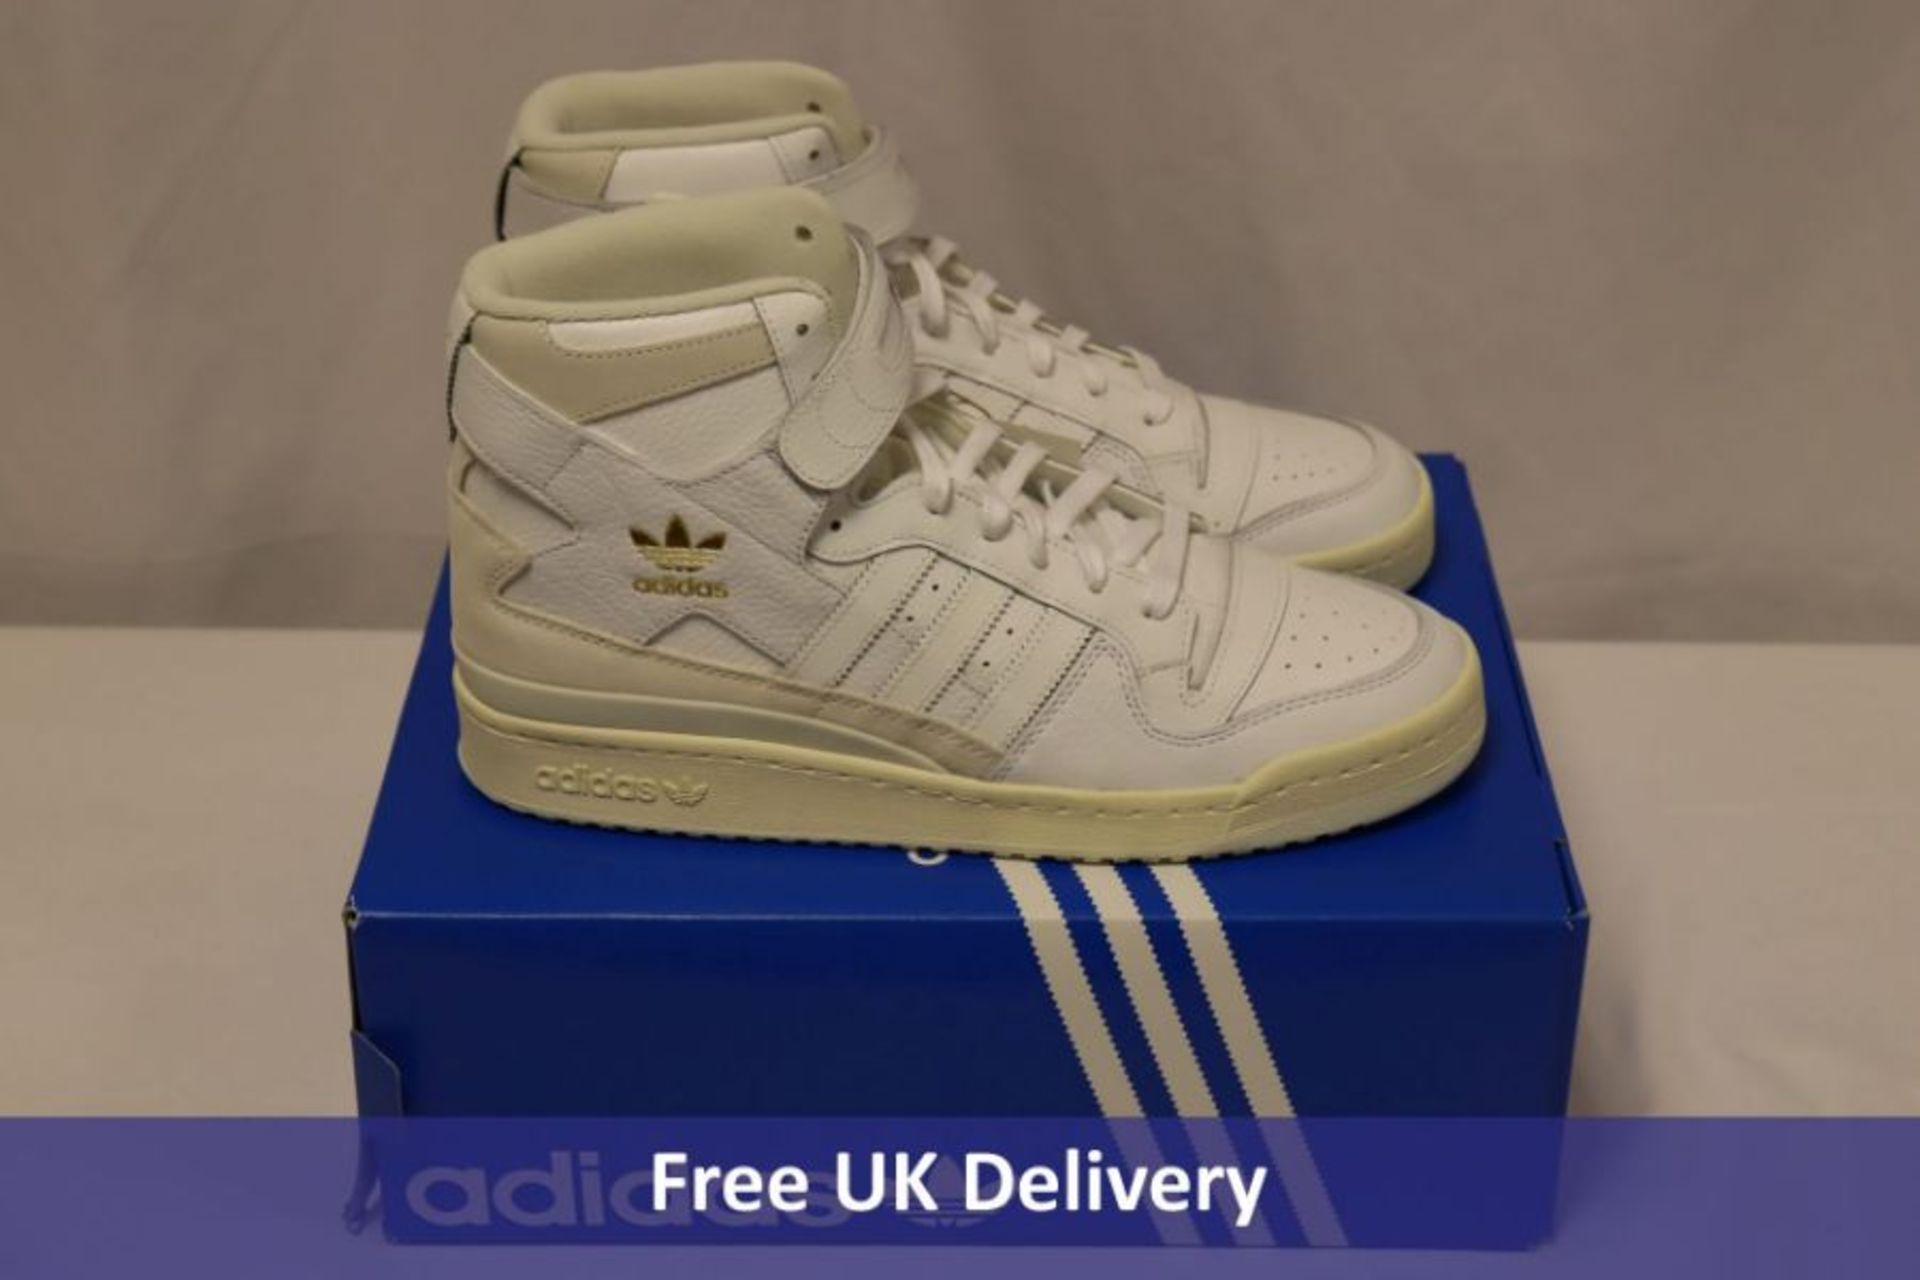 Adidas Originals Forum 84 Hi Trainers, White/Gold Foil, UK 11